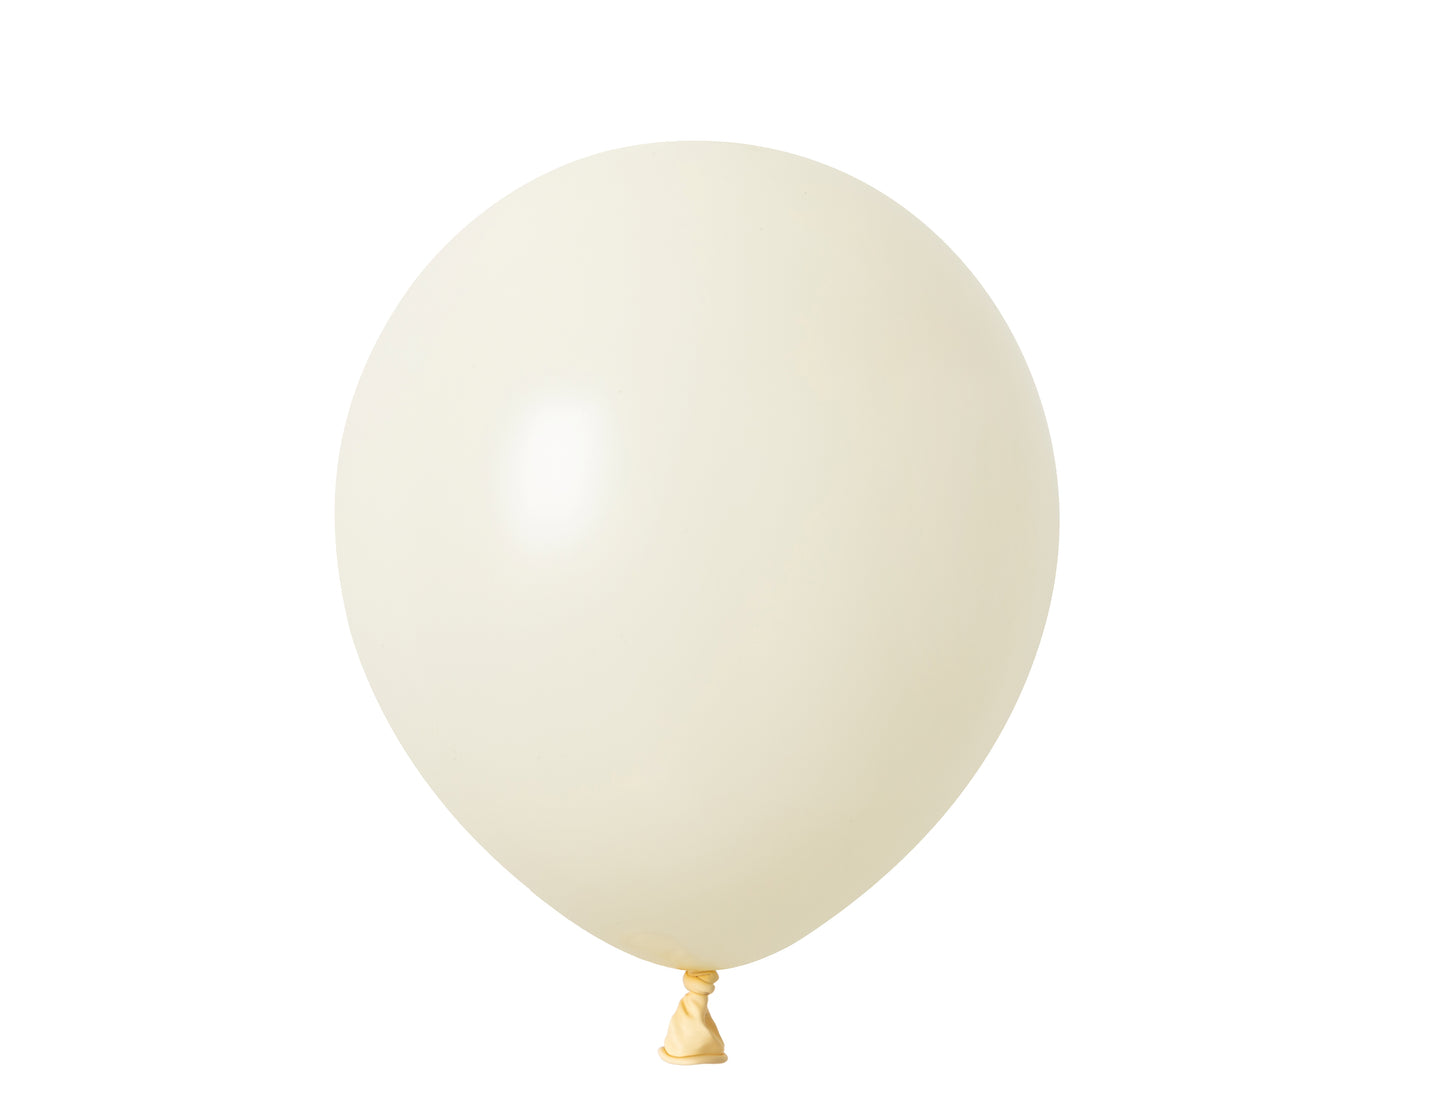 Winntex Premium 12" Ivory Latex Balloon 100ct